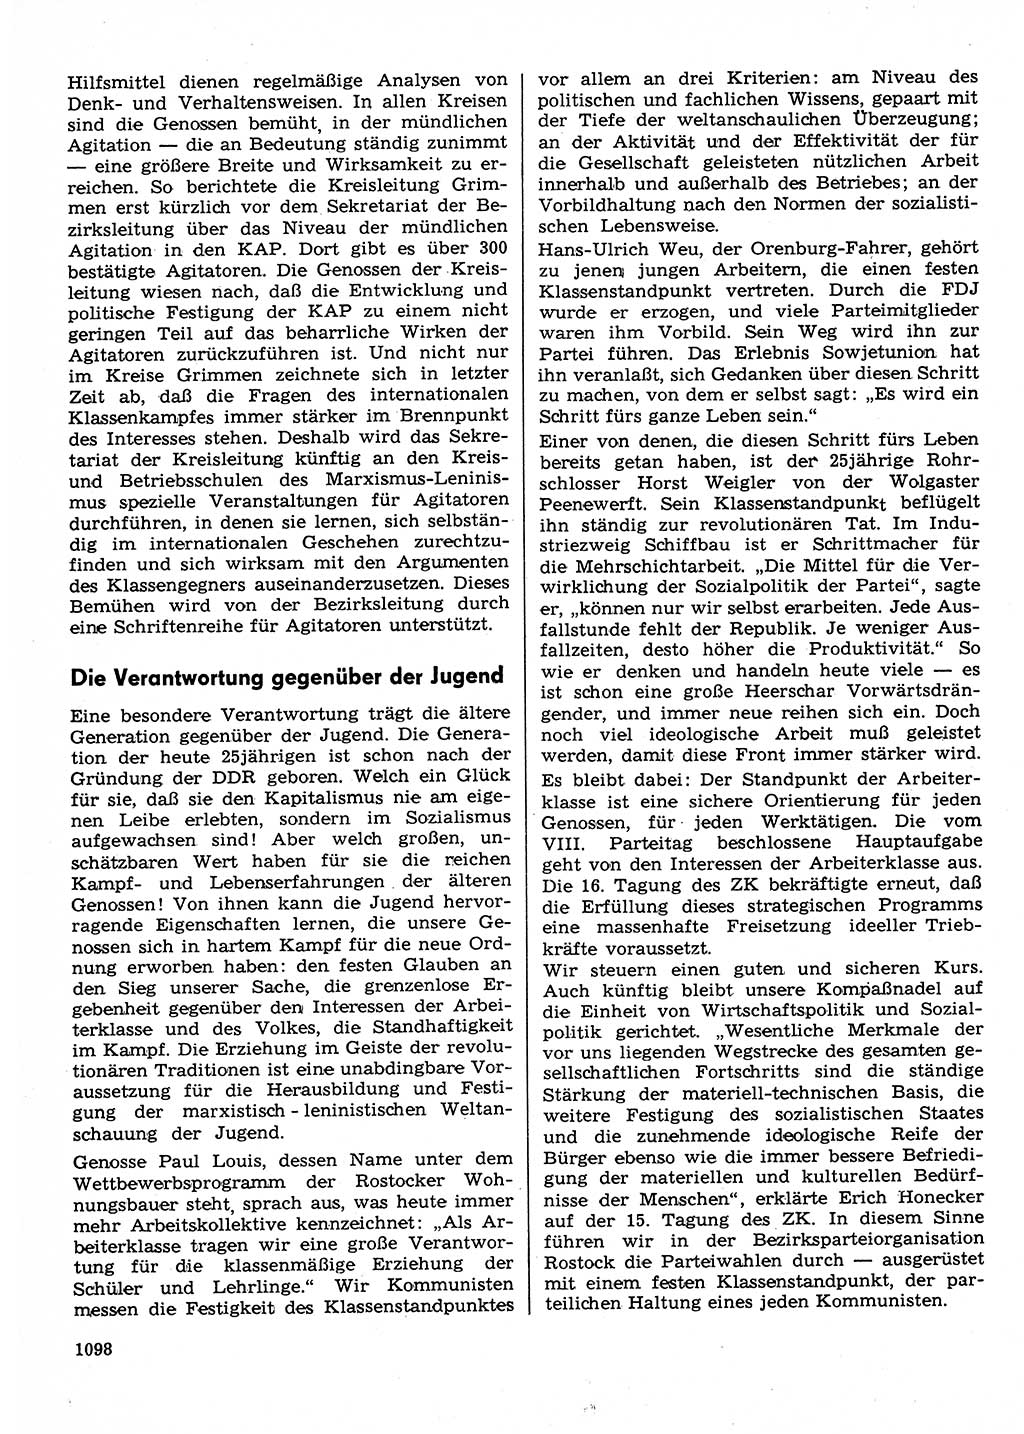 Neuer Weg (NW), Organ des Zentralkomitees (ZK) der SED (Sozialistische Einheitspartei Deutschlands) für Fragen des Parteilebens, 30. Jahrgang [Deutsche Demokratische Republik (DDR)] 1975, Seite 1098 (NW ZK SED DDR 1975, S. 1098)